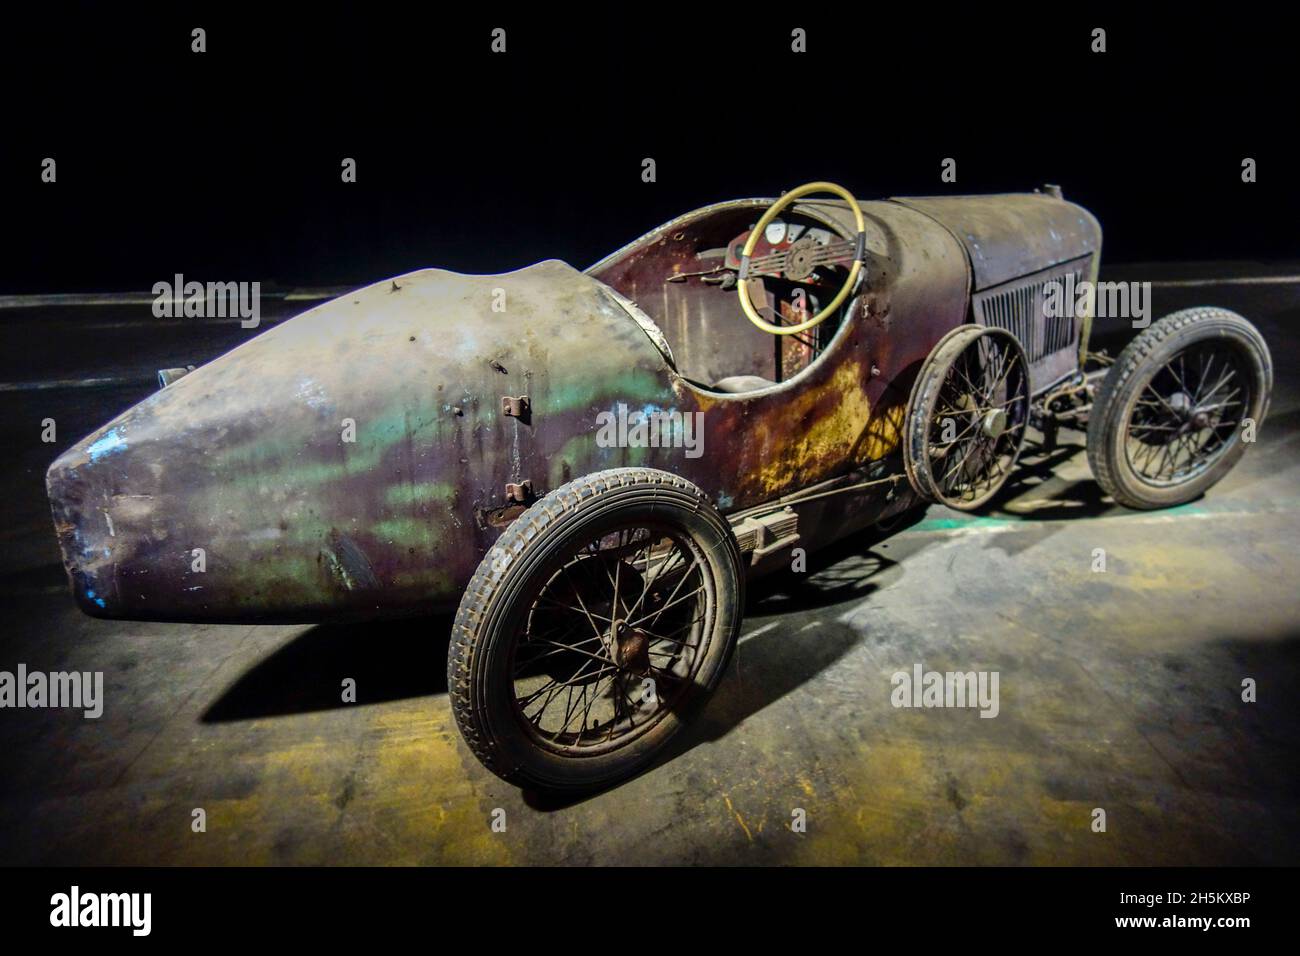 Rusty et Dusty 1927 Amilcar CMSS, voiture de sport classique française / oldtimer, fabriqué par la société Amilcar, en mauvais état prêt à être restauré dans le garage Banque D'Images